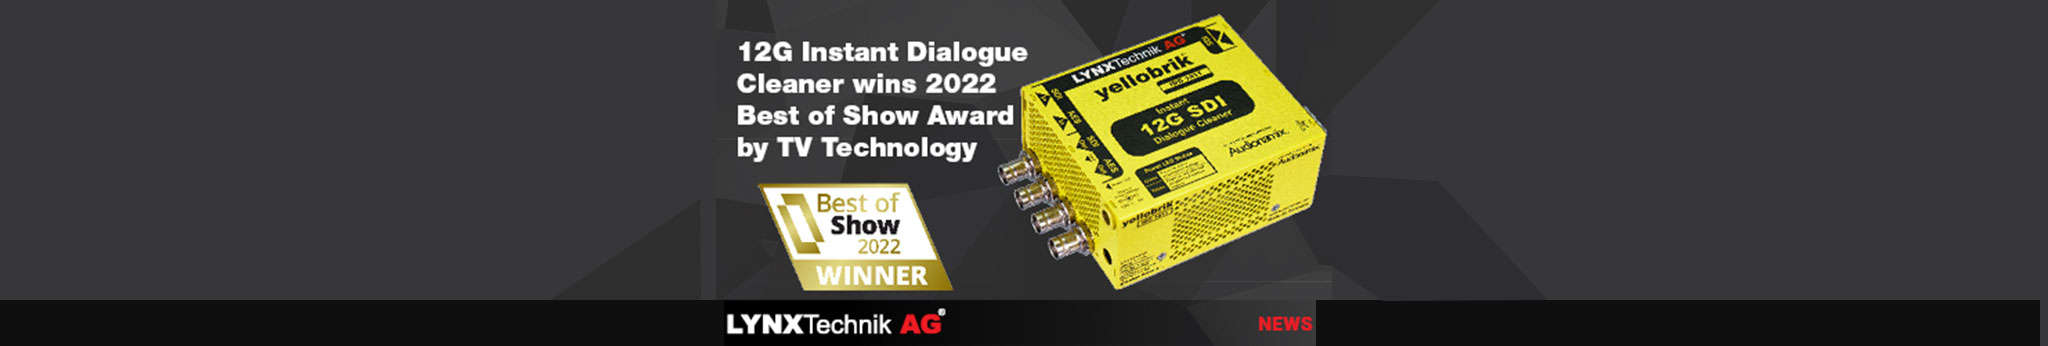 LYNX Technik Awarded Best In Show (2)